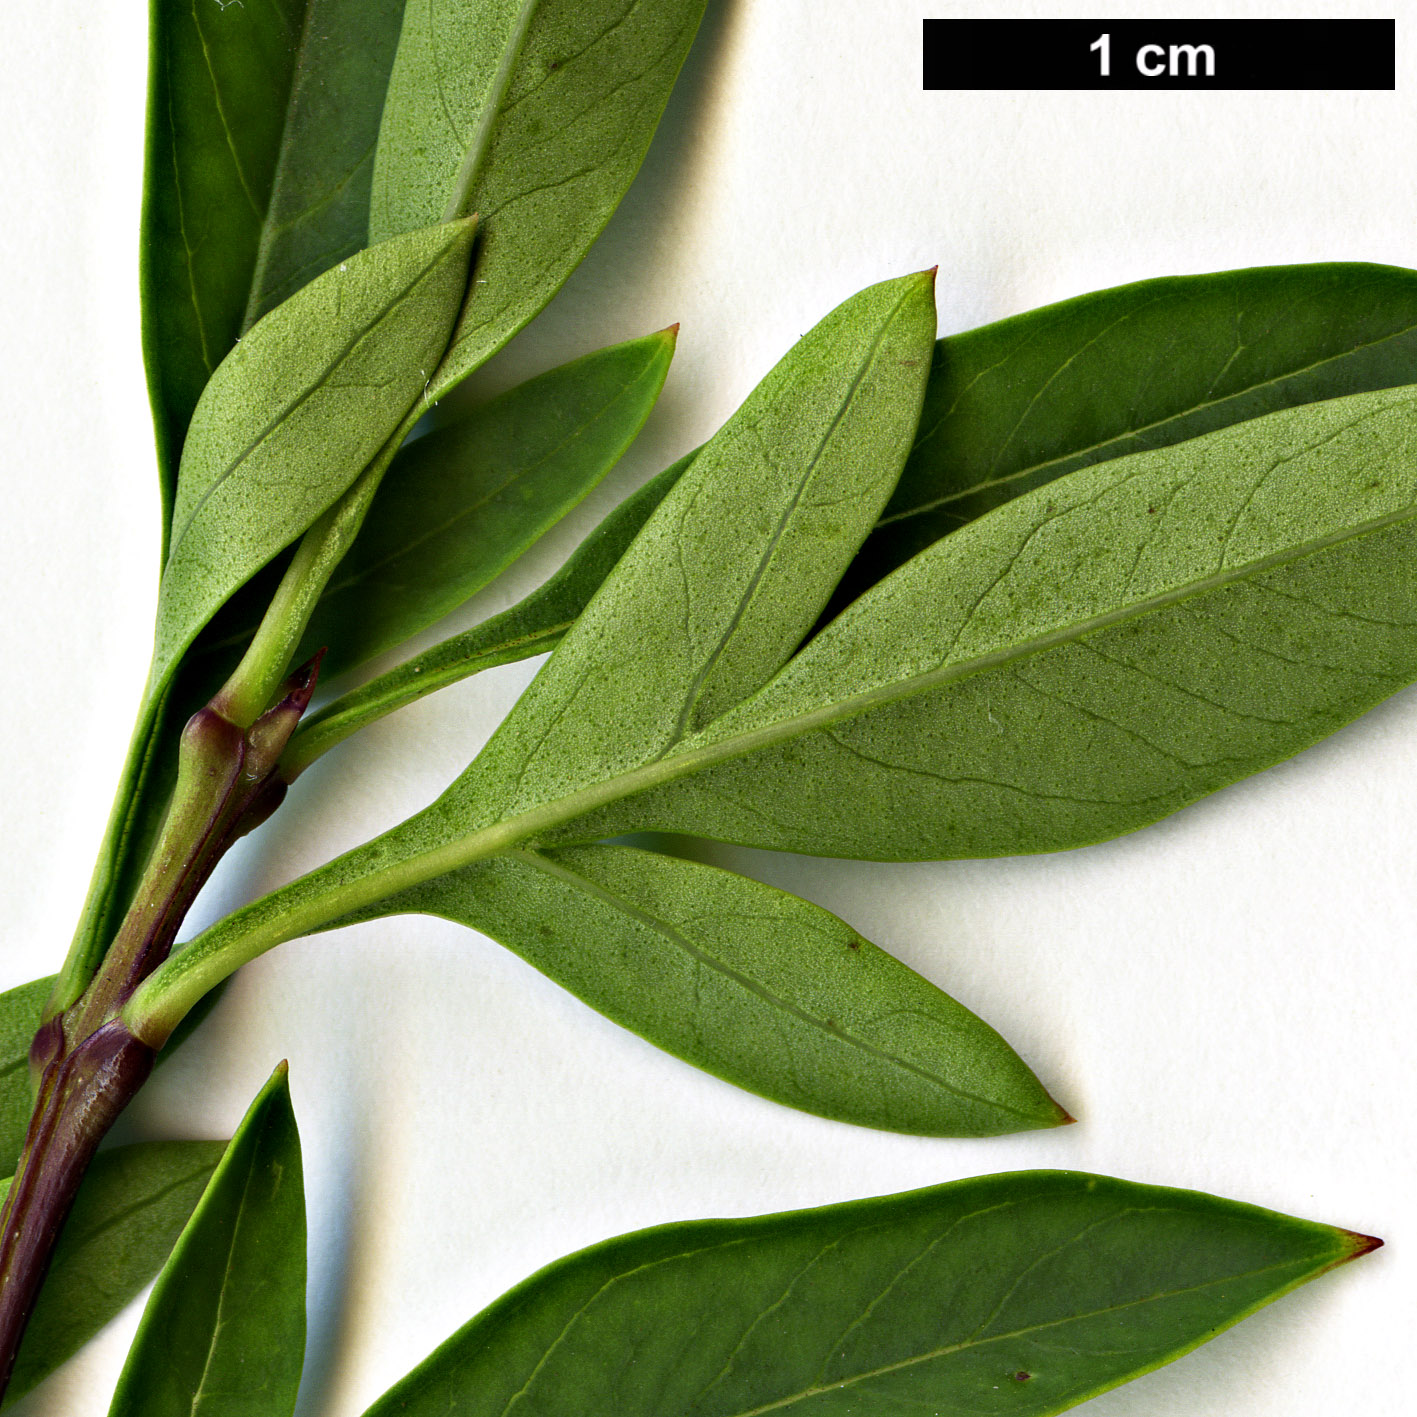 High resolution image: Family: Oleaceae - Genus: Syringa - Taxon: ×laciniata